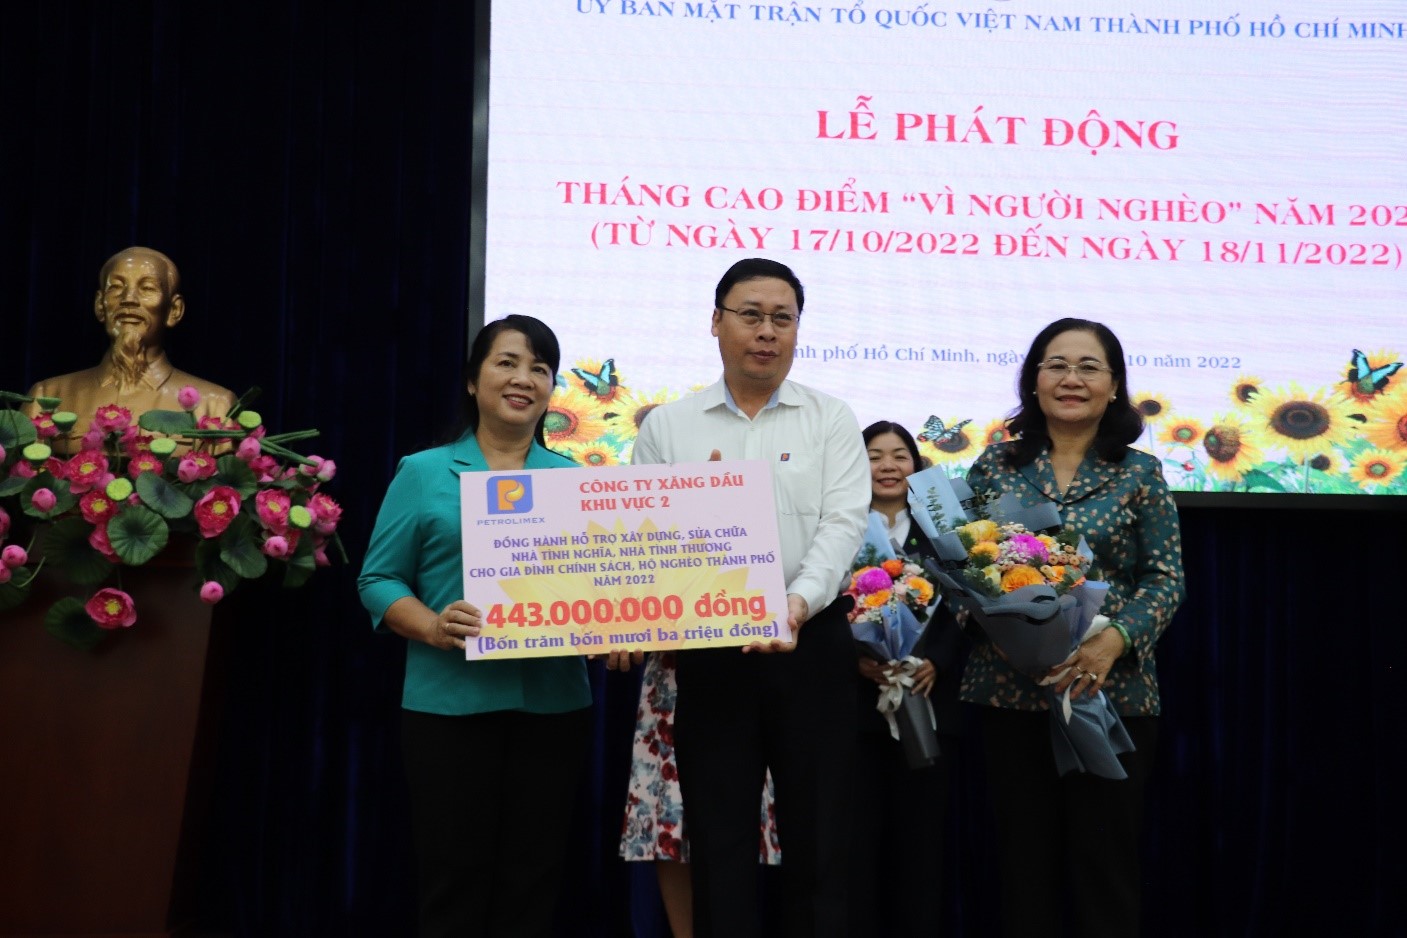 Petrolimex Sài Gòn ủng hộ 443 triệu đồng hưởng ứng Tháng cao điểm  “Vì người nghèo”